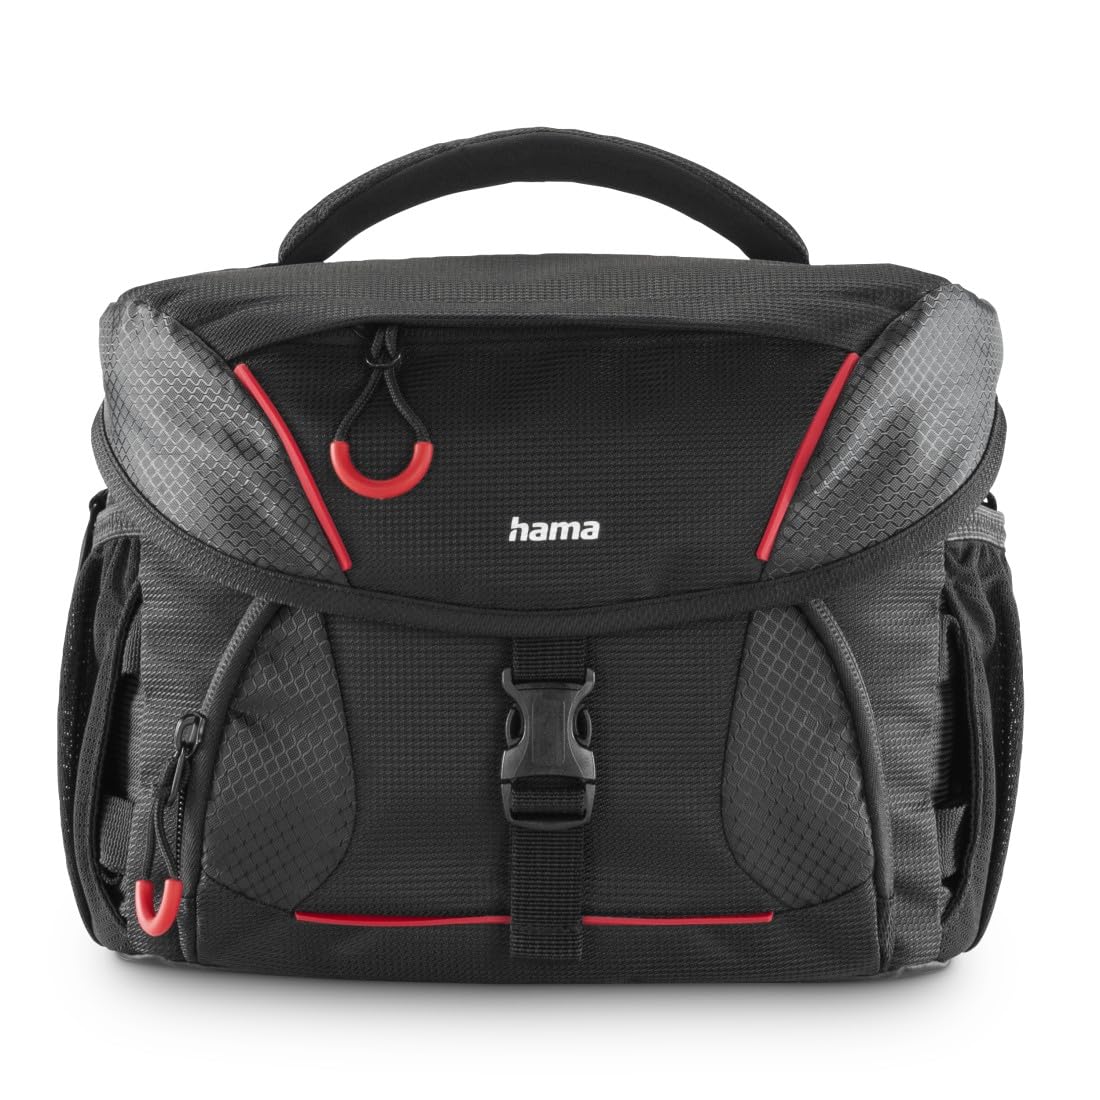 Hama Kameratasche (Fototasche für digitale SLR Kameras mit Zubehör, Halterung für Kamerastativ, Regenschutz, gepolstert, Tragegriff, Trolleyband, abwischbarer Boden, ergonomisch) schwarz